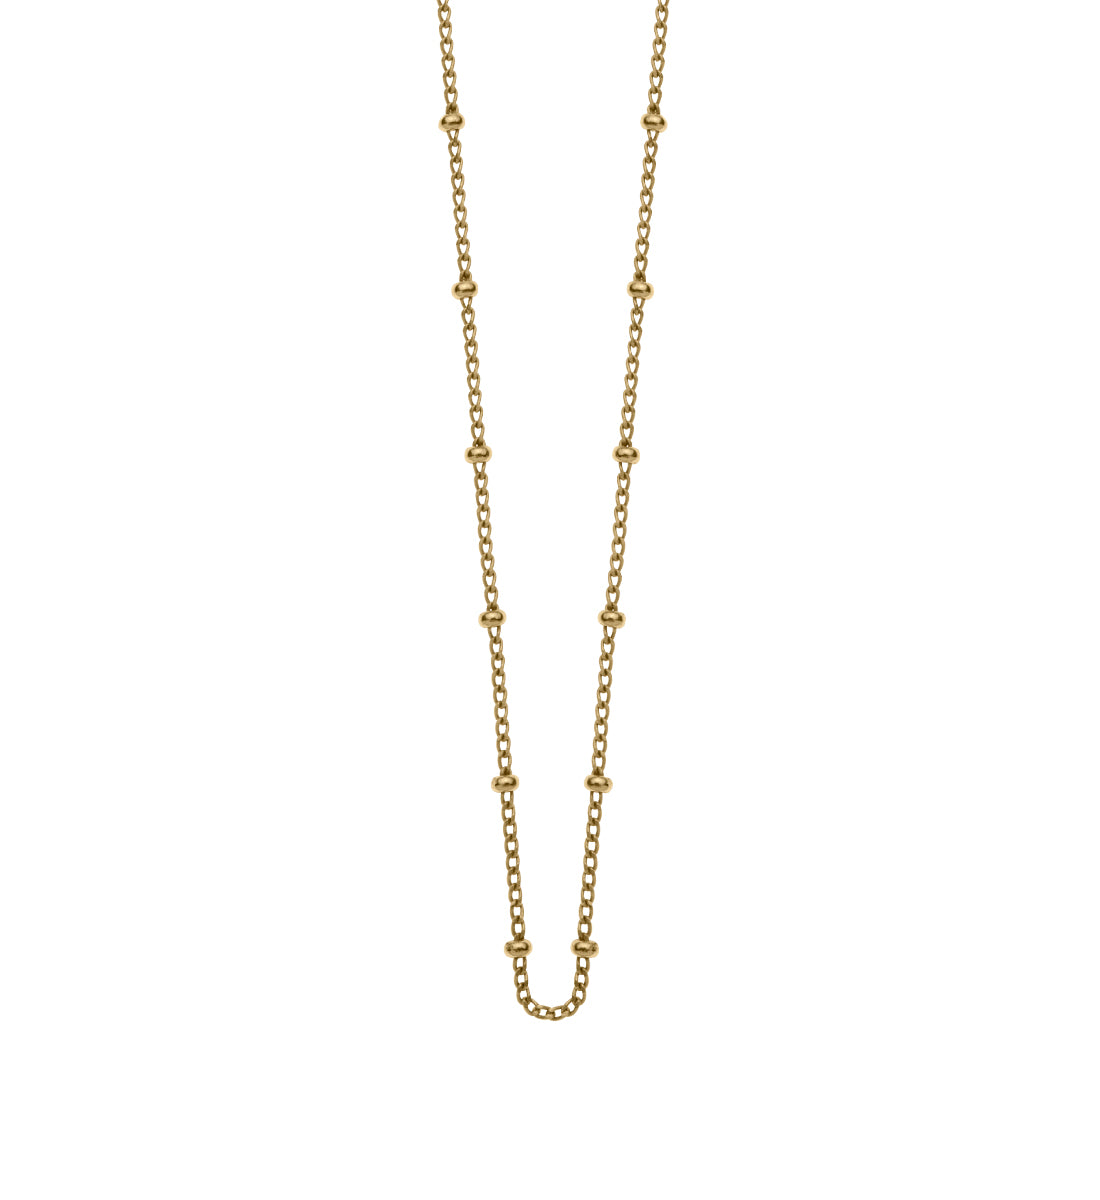 Kirstin Ash Bespoke Ball Chain (45-50cm) in Gold Vermeil